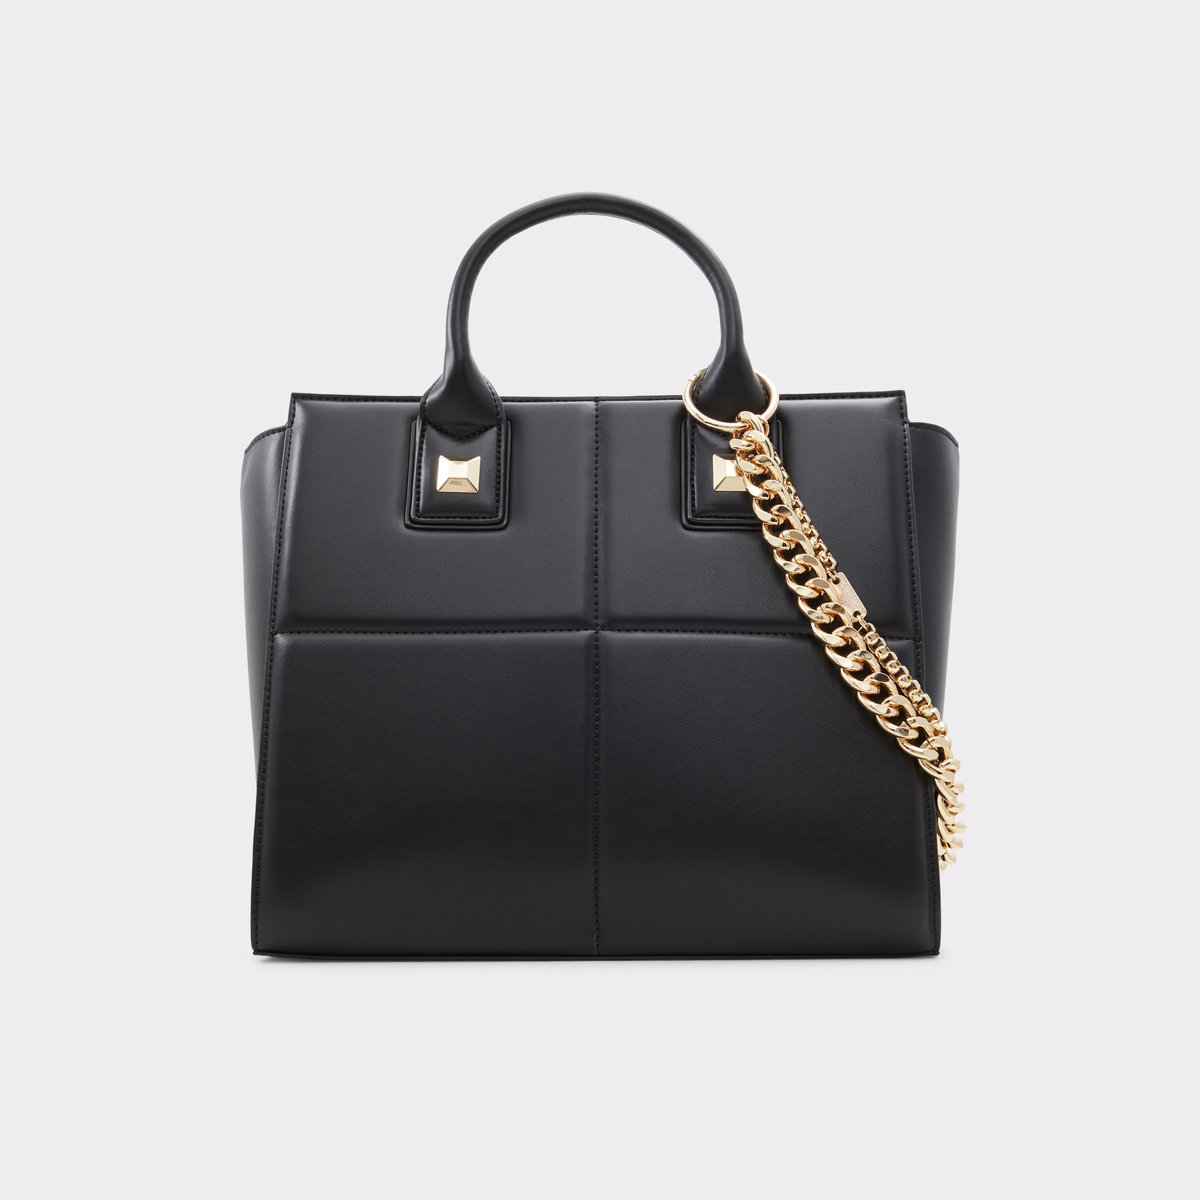 Buy Aldo Bags & Handbags online - Women - 74 products